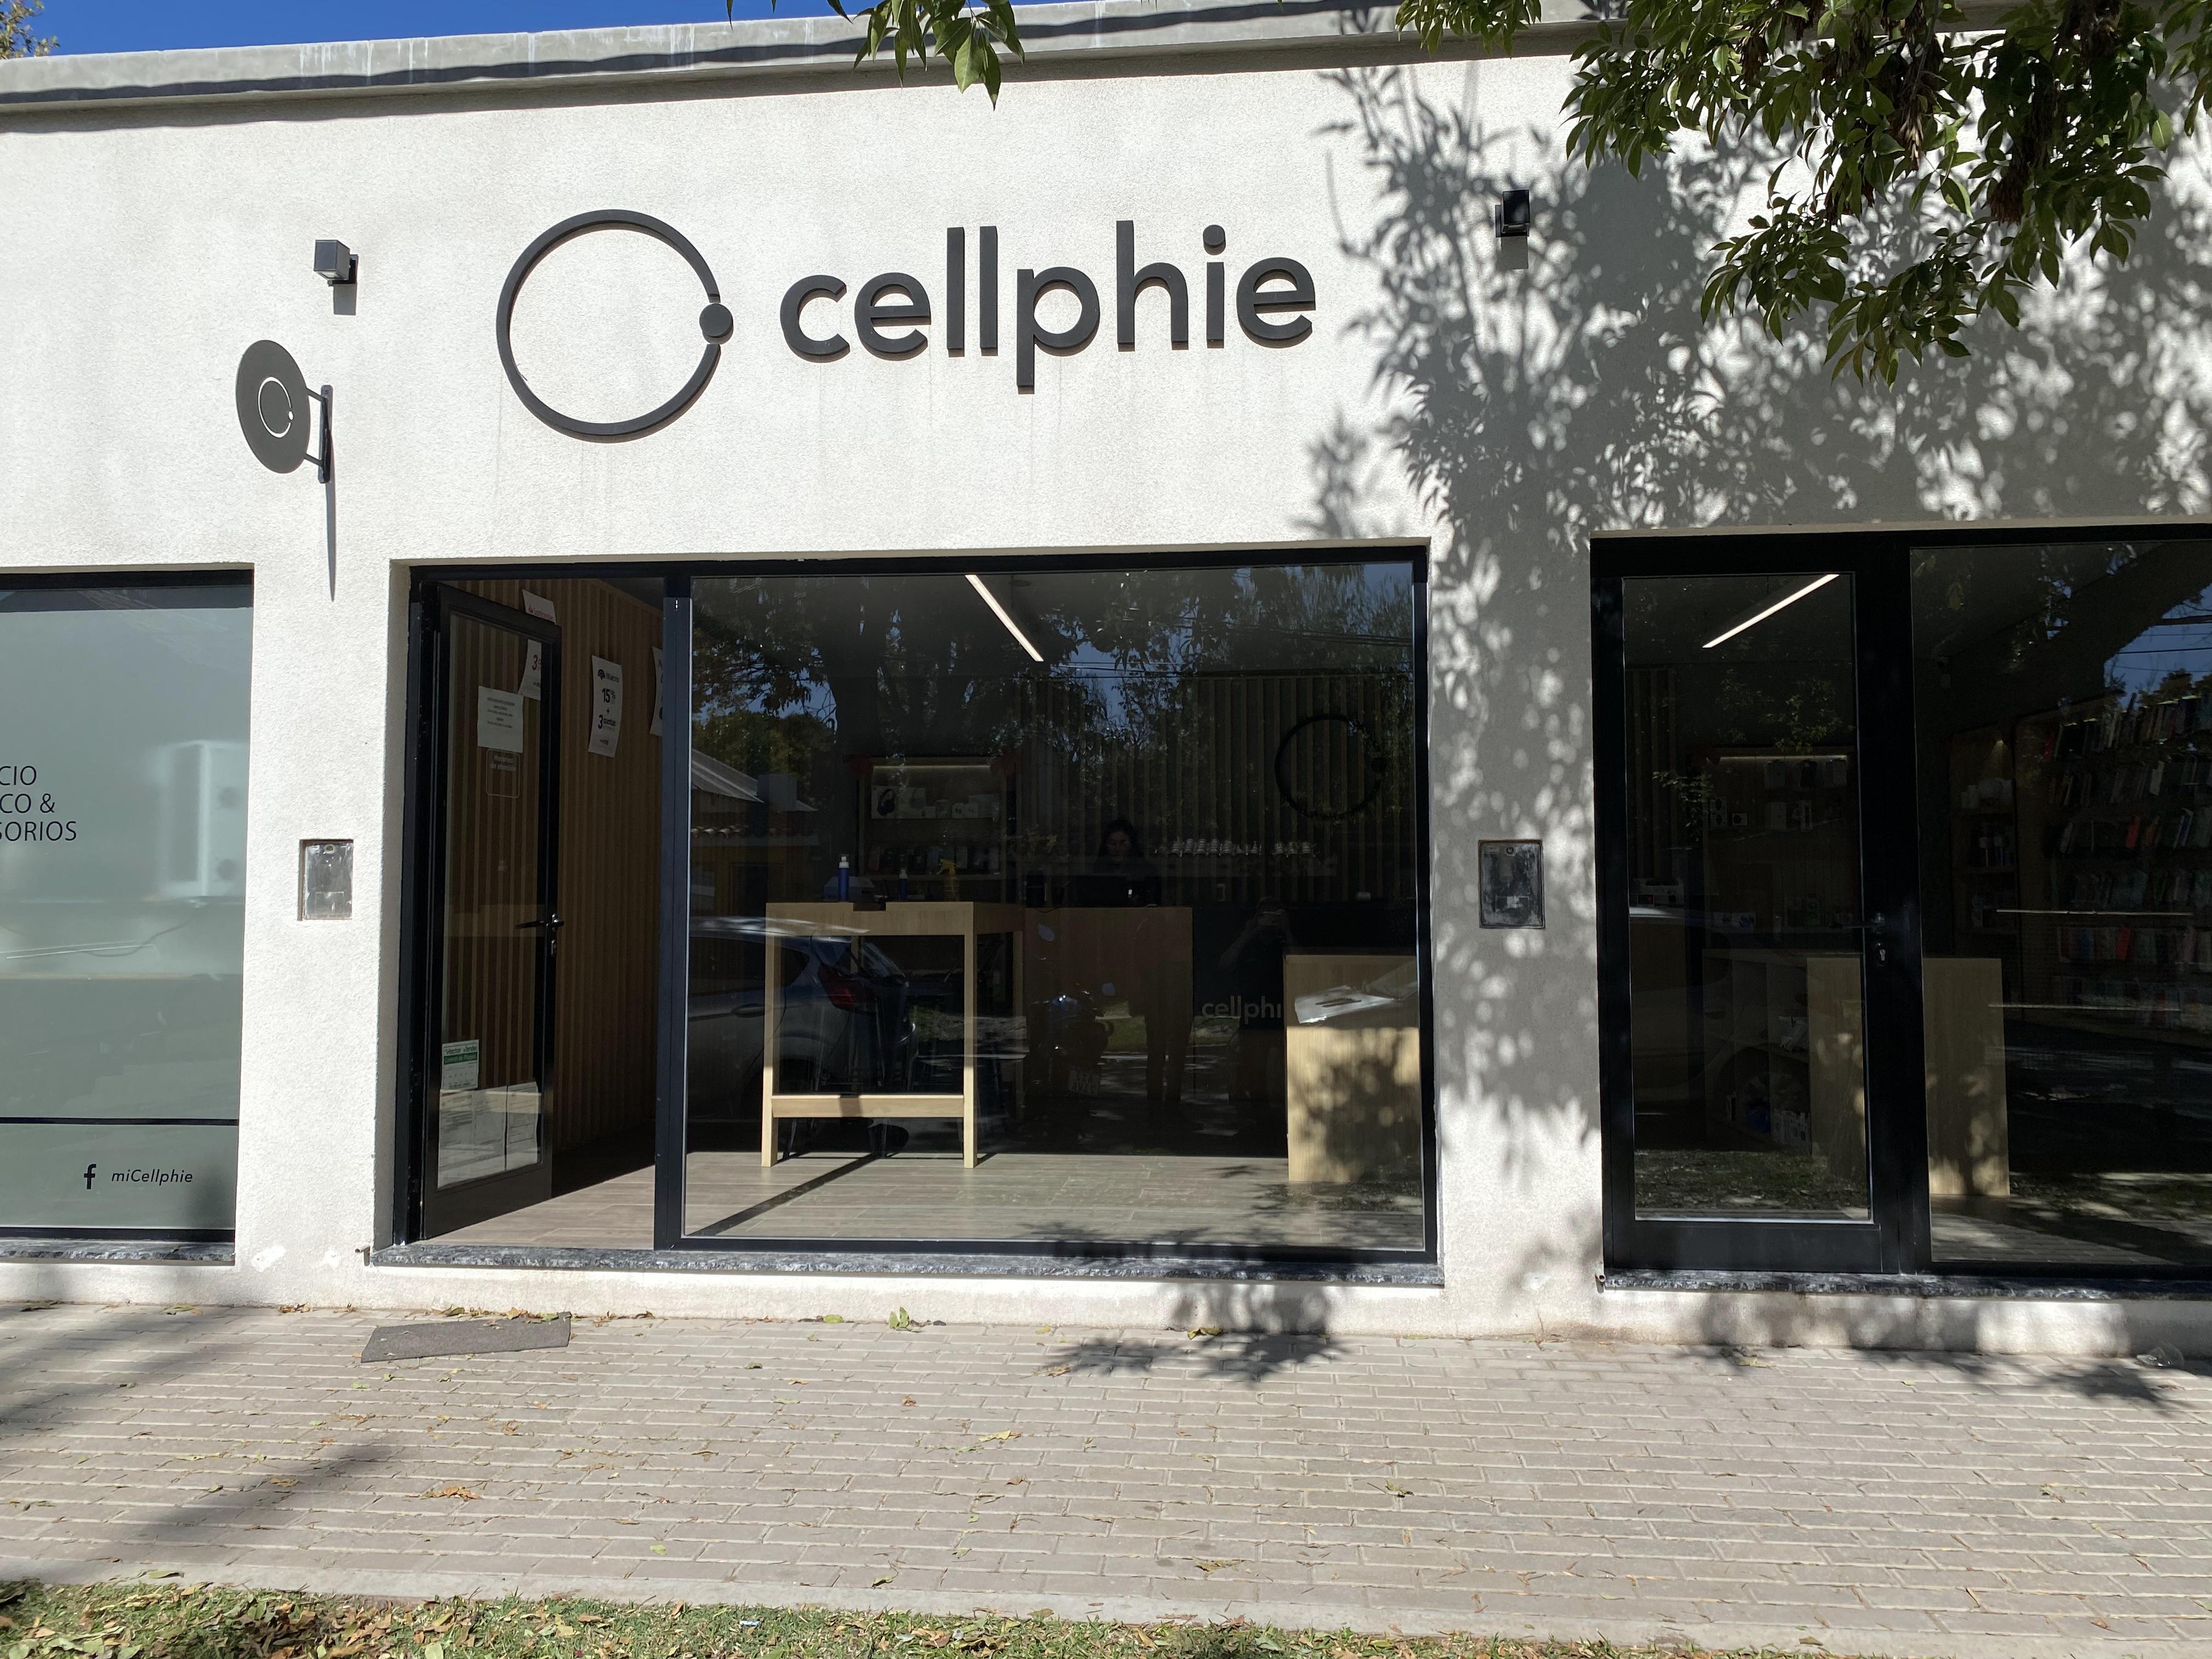   Cellphie: 8 años de espíritu joven dedicado a los celulares